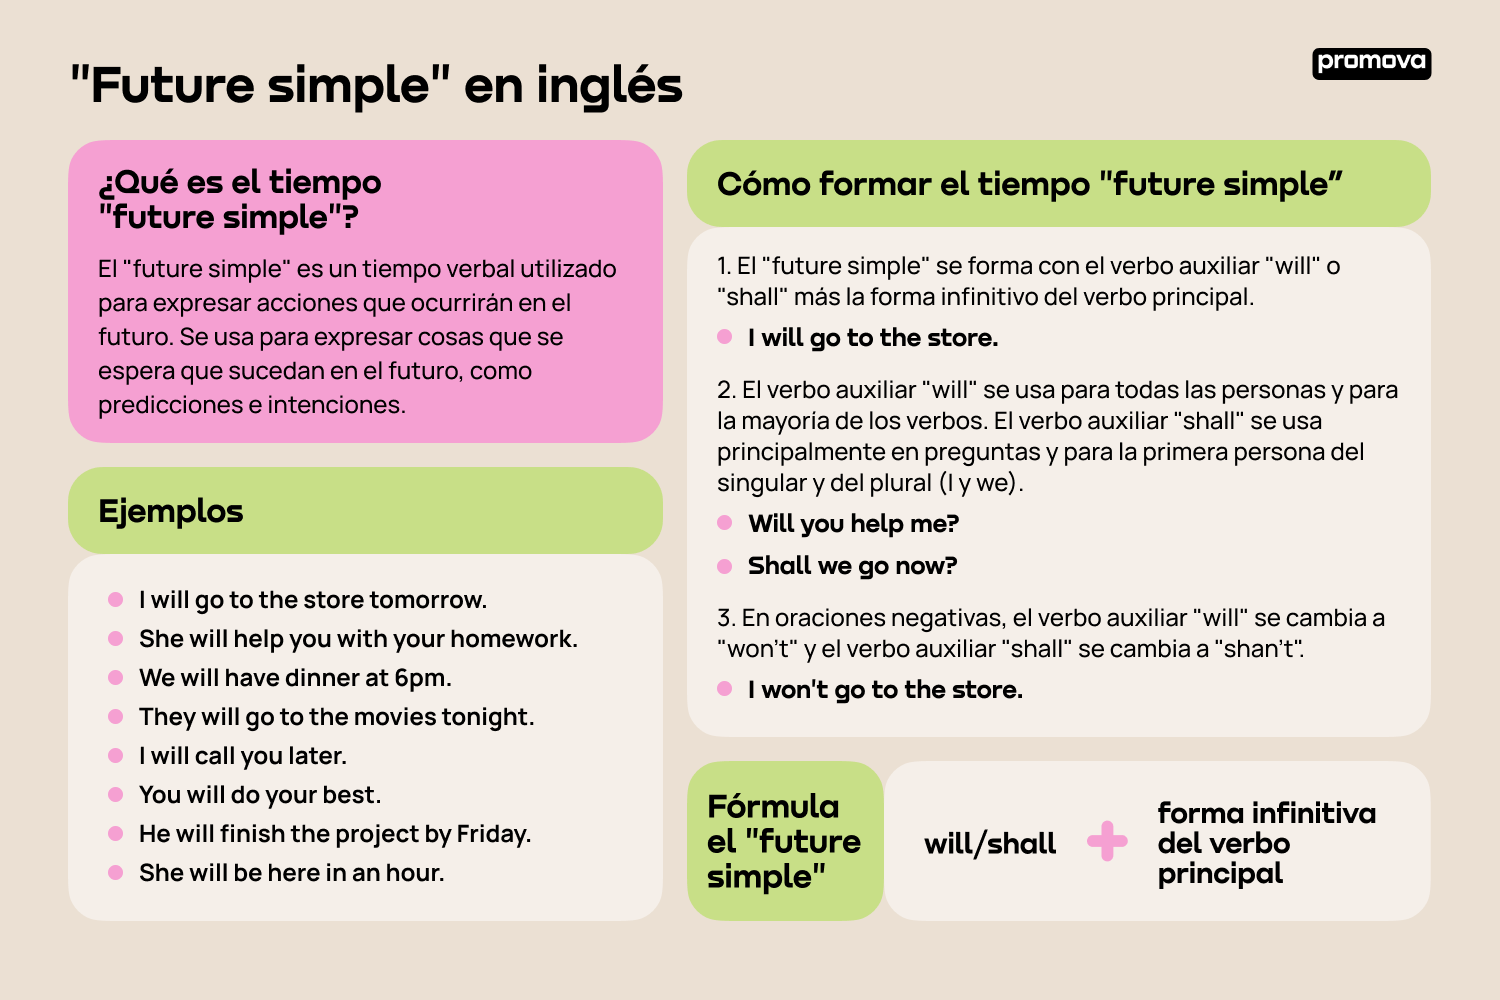 Future simple en inglés: Todo lo que debes saber para dominarlo